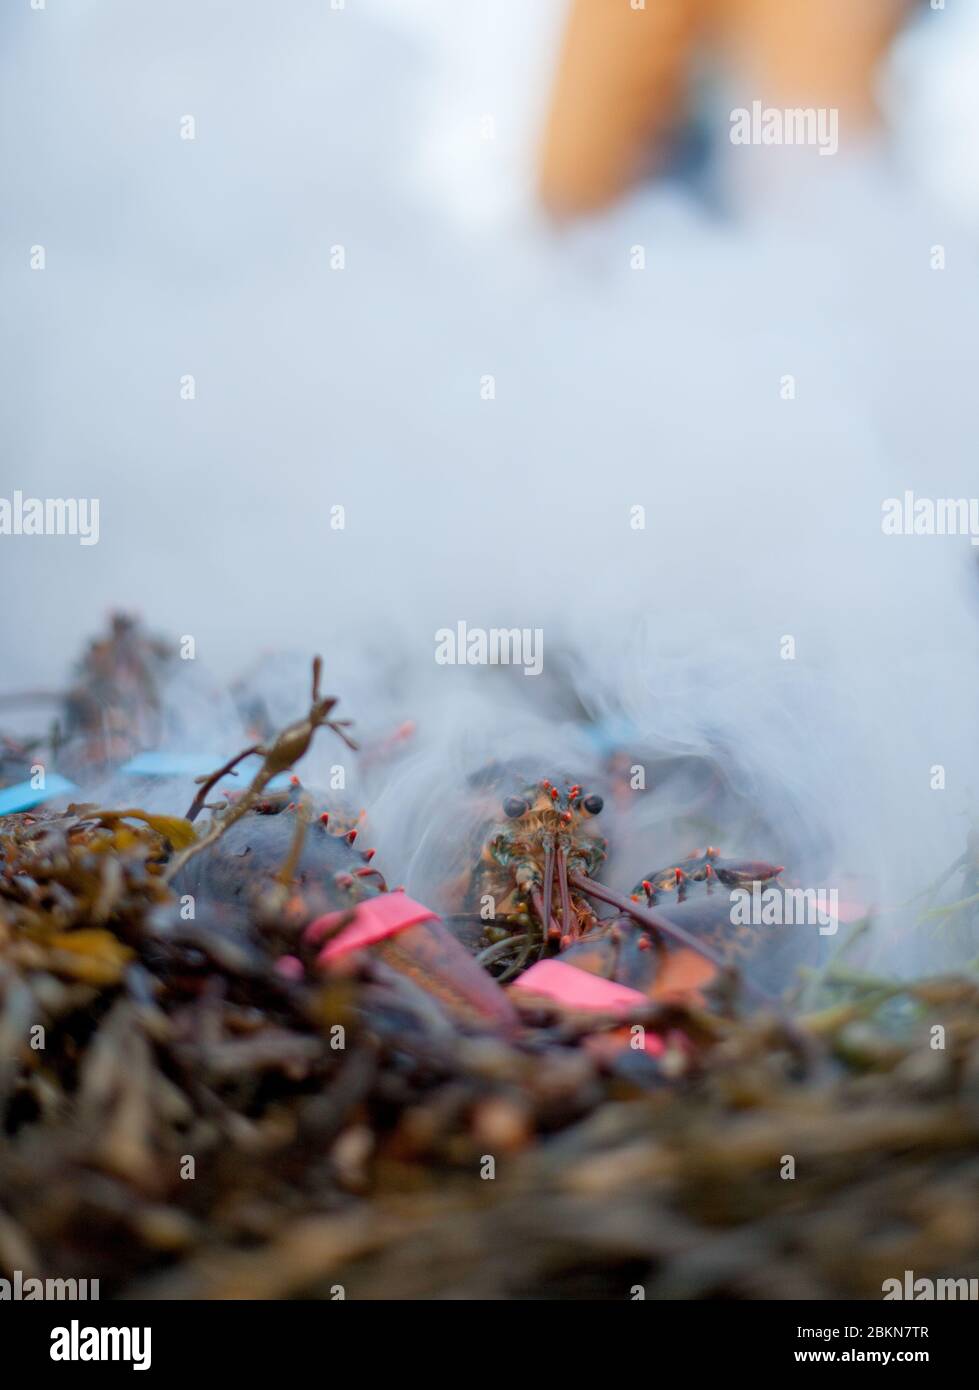 Un'aragosta rossa del Maine, con le sue chele legate da bande di gomma, si siede su un mucchio di alghe in preparazione per essere cotti a vapore ad un forno di aragosta, Maine, USA Foto Stock